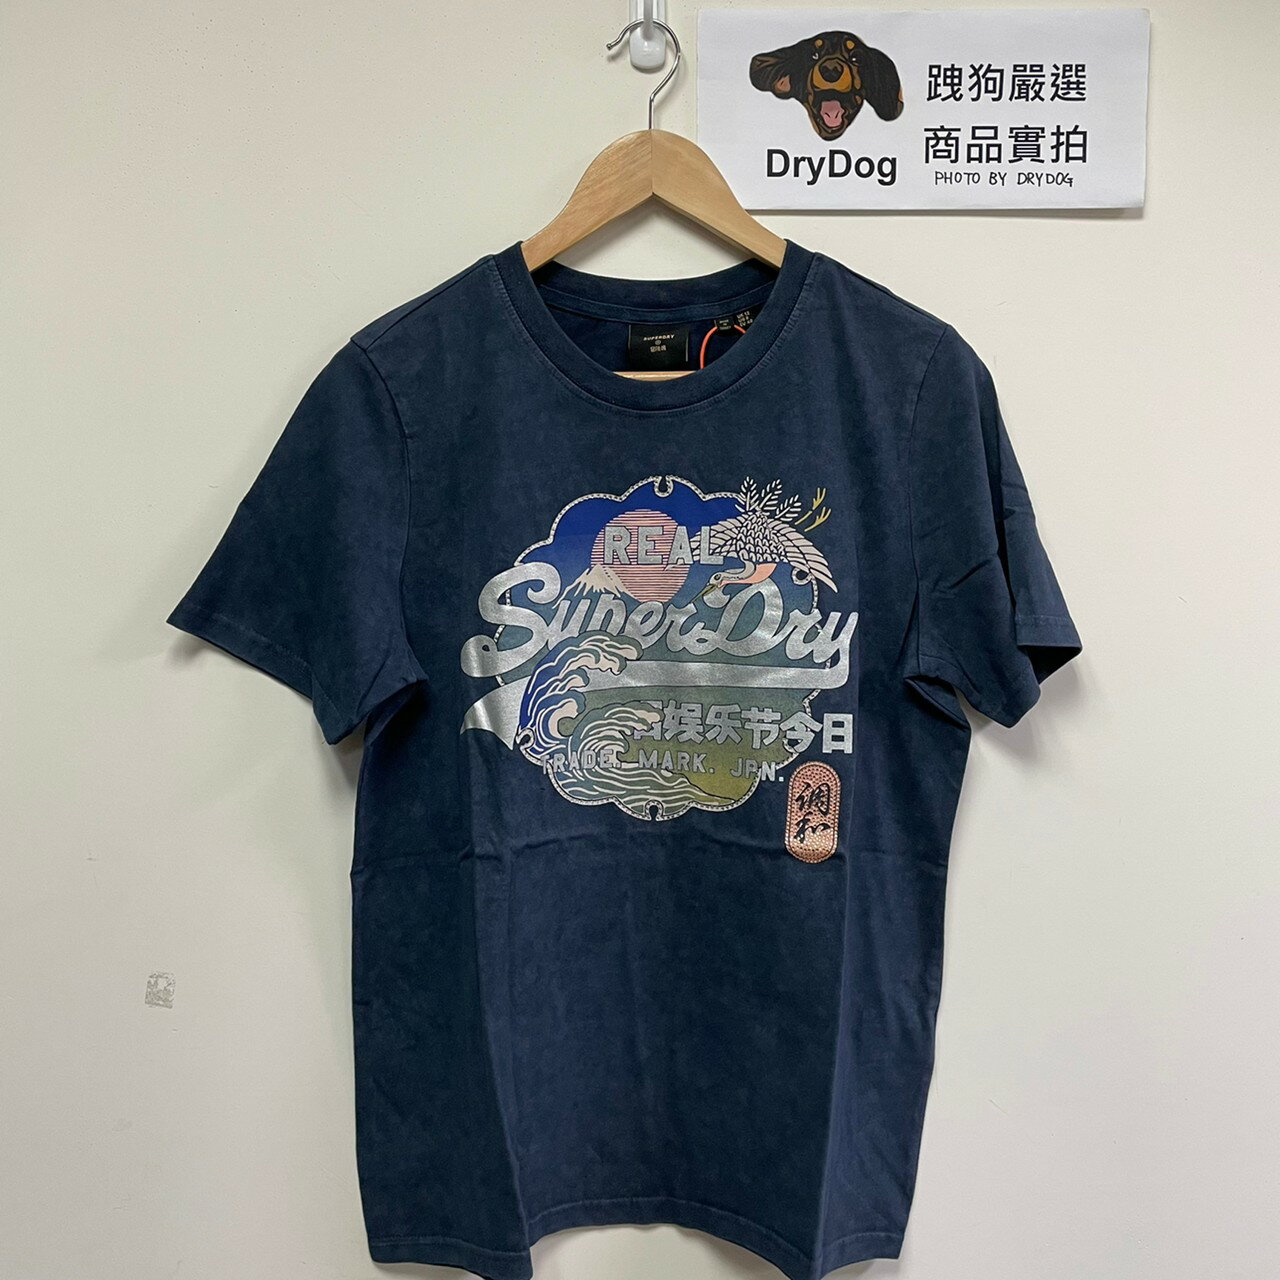 跩狗嚴選 極度乾燥 Superdry 新款 Itago T-shirt 有機純棉 短袖 寬鬆版 T恤 日本鶴 海浪 復古水洗牛仔藍